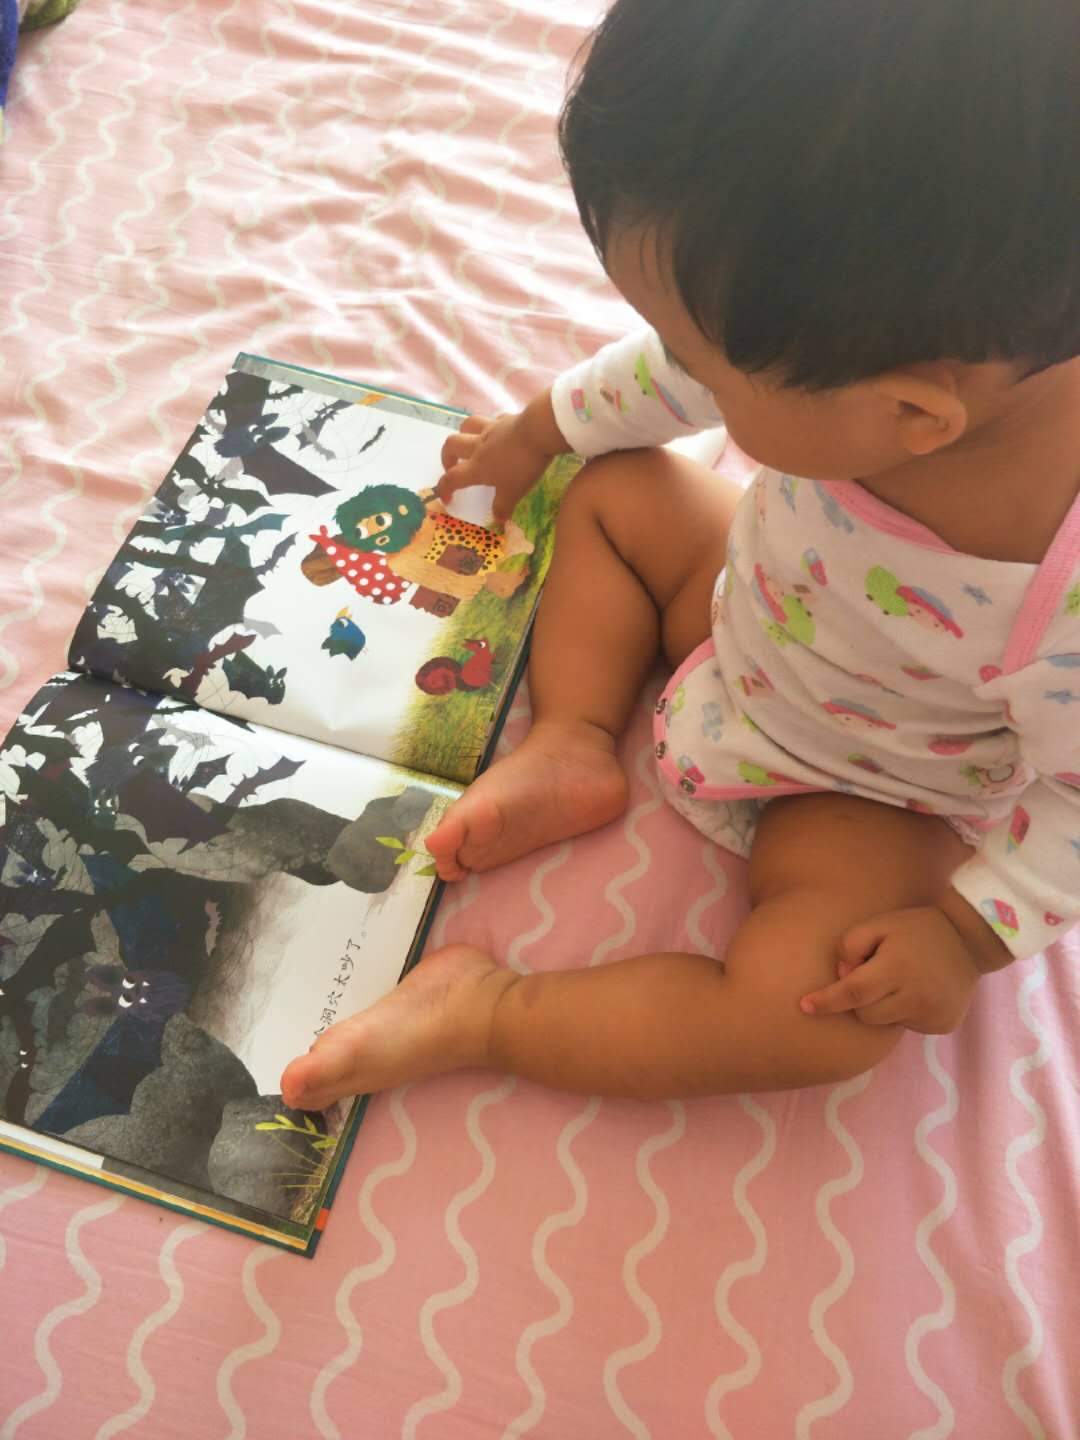 宝宝1岁4个月 爱这本书爱到原地爆炸 我都快讲吐了 这几天开始她给我讲了 真的是独宠